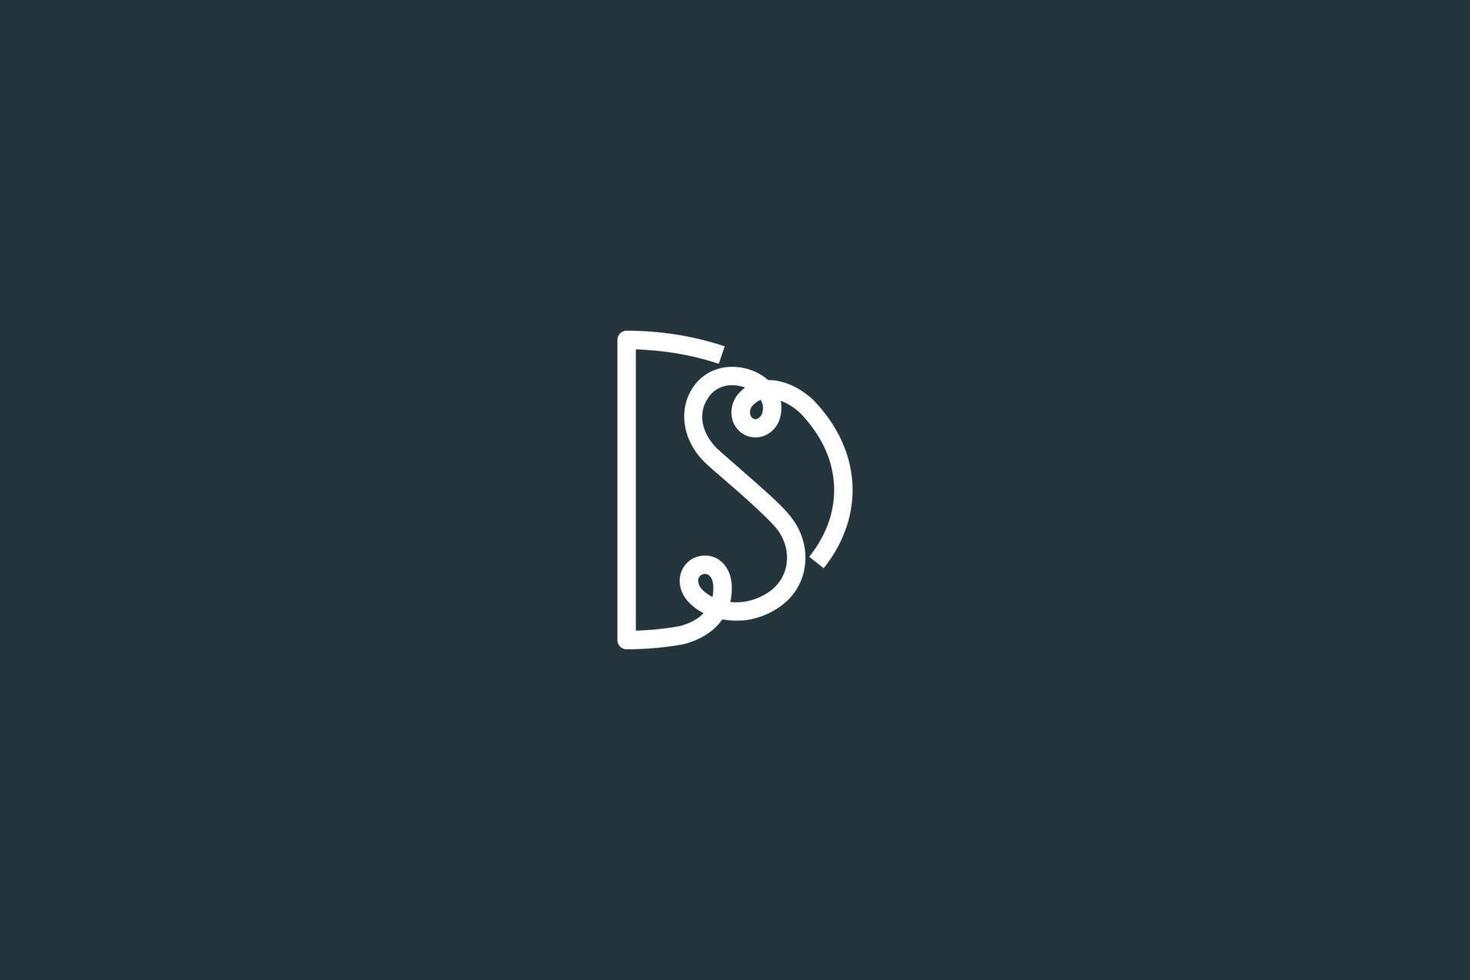 Anfangsbuchstabe SD-Logo-Design-Vektorvorlage vektor